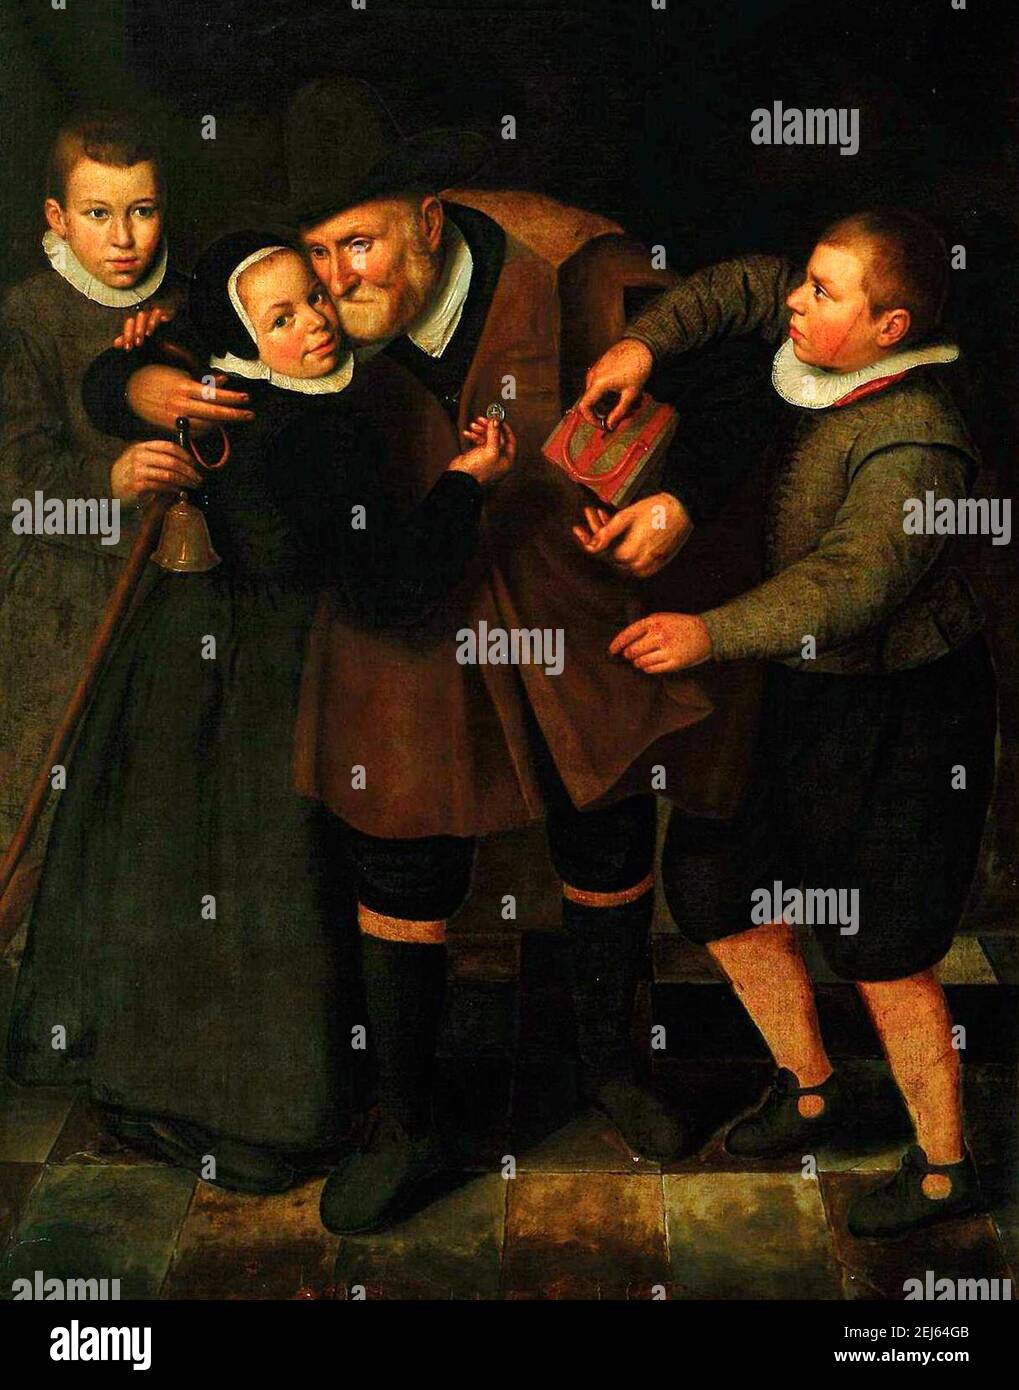 Viejo agradecido por los limosnas - Cornelis Engelsz, alrededor de 1625 Foto de stock